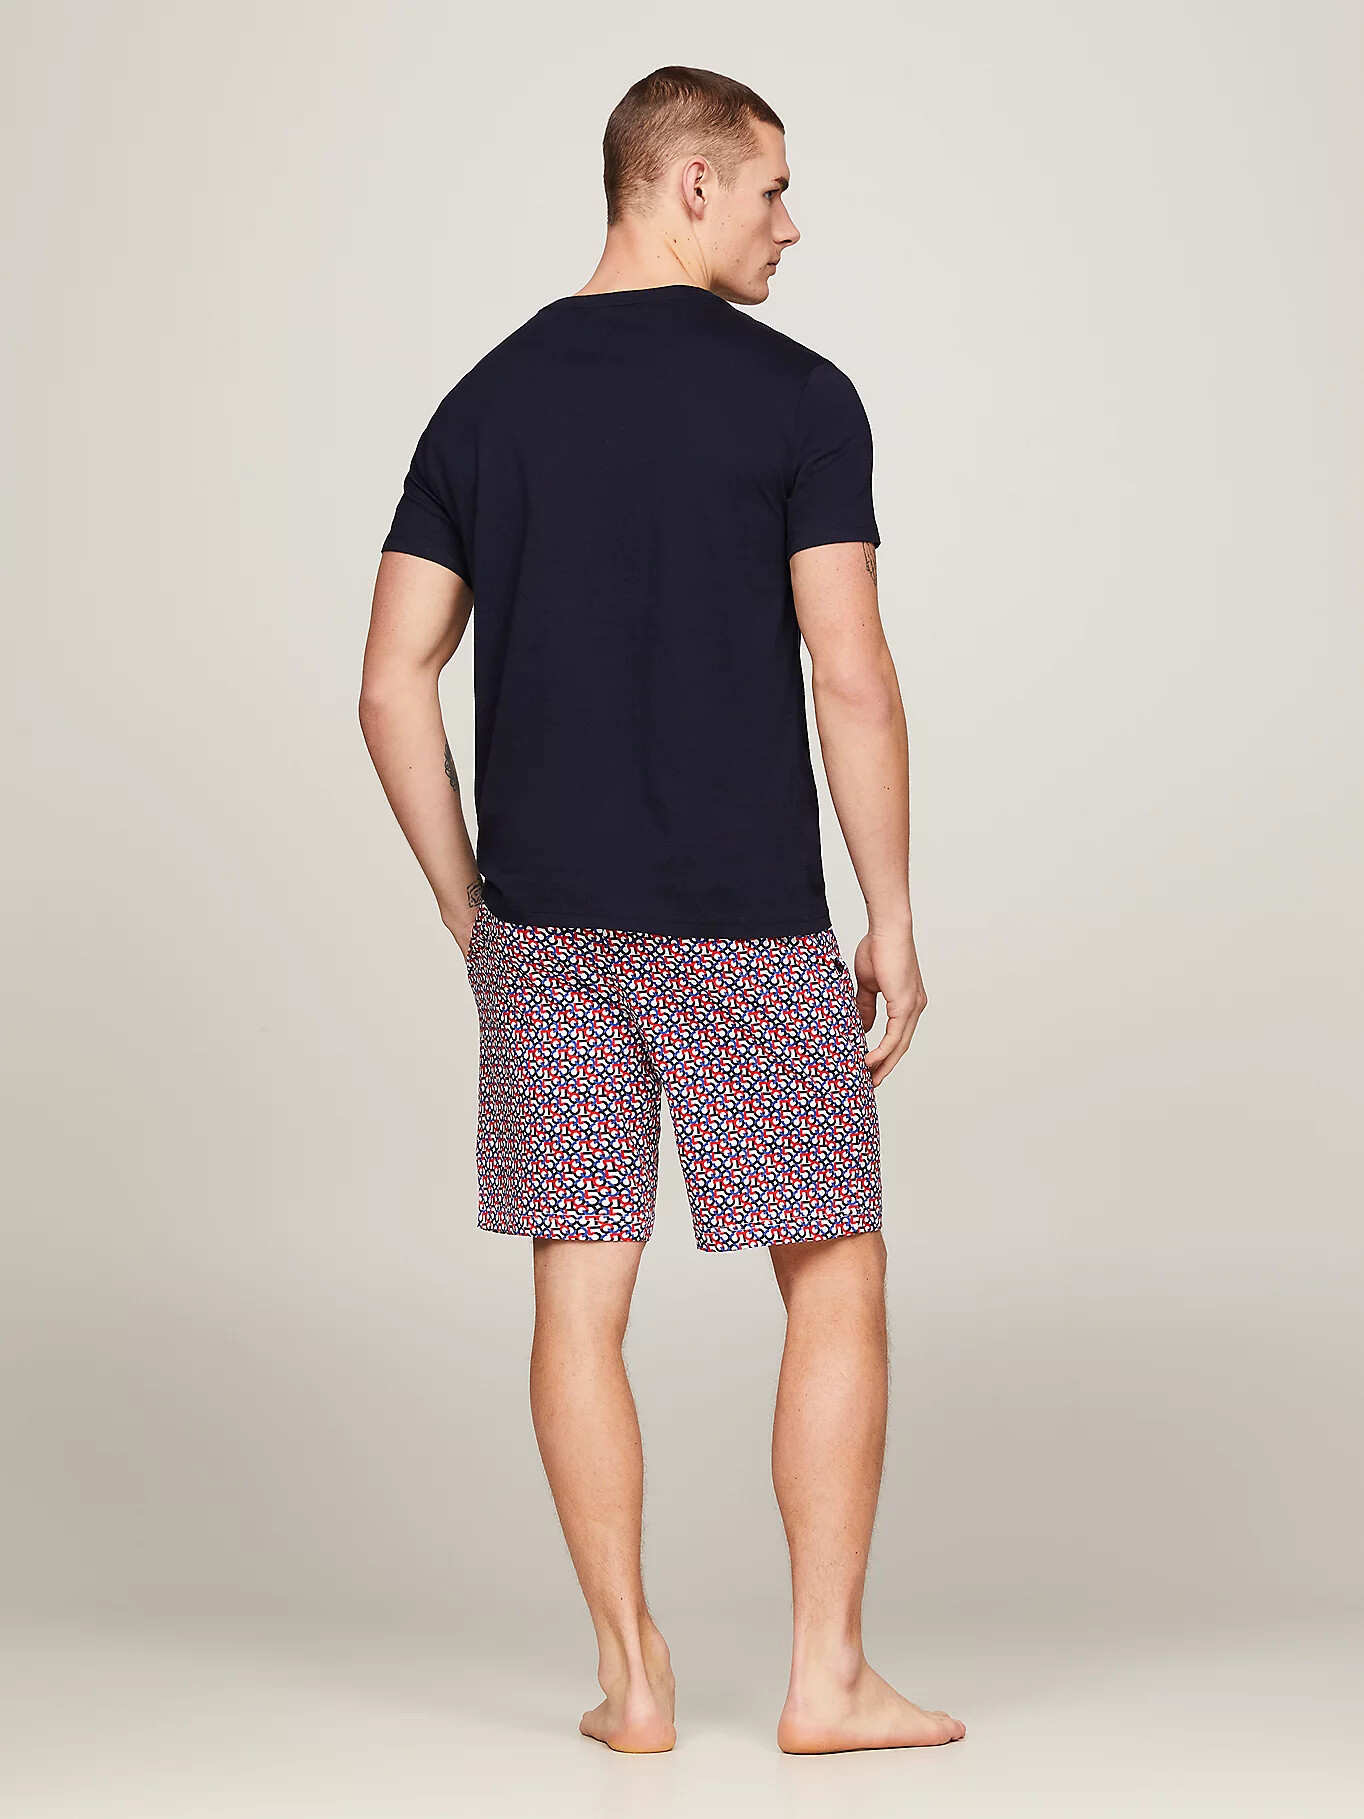 Pánské pyžamo UM0UM02319 0ST černé se vzorem - Tommy Hilfiger XL